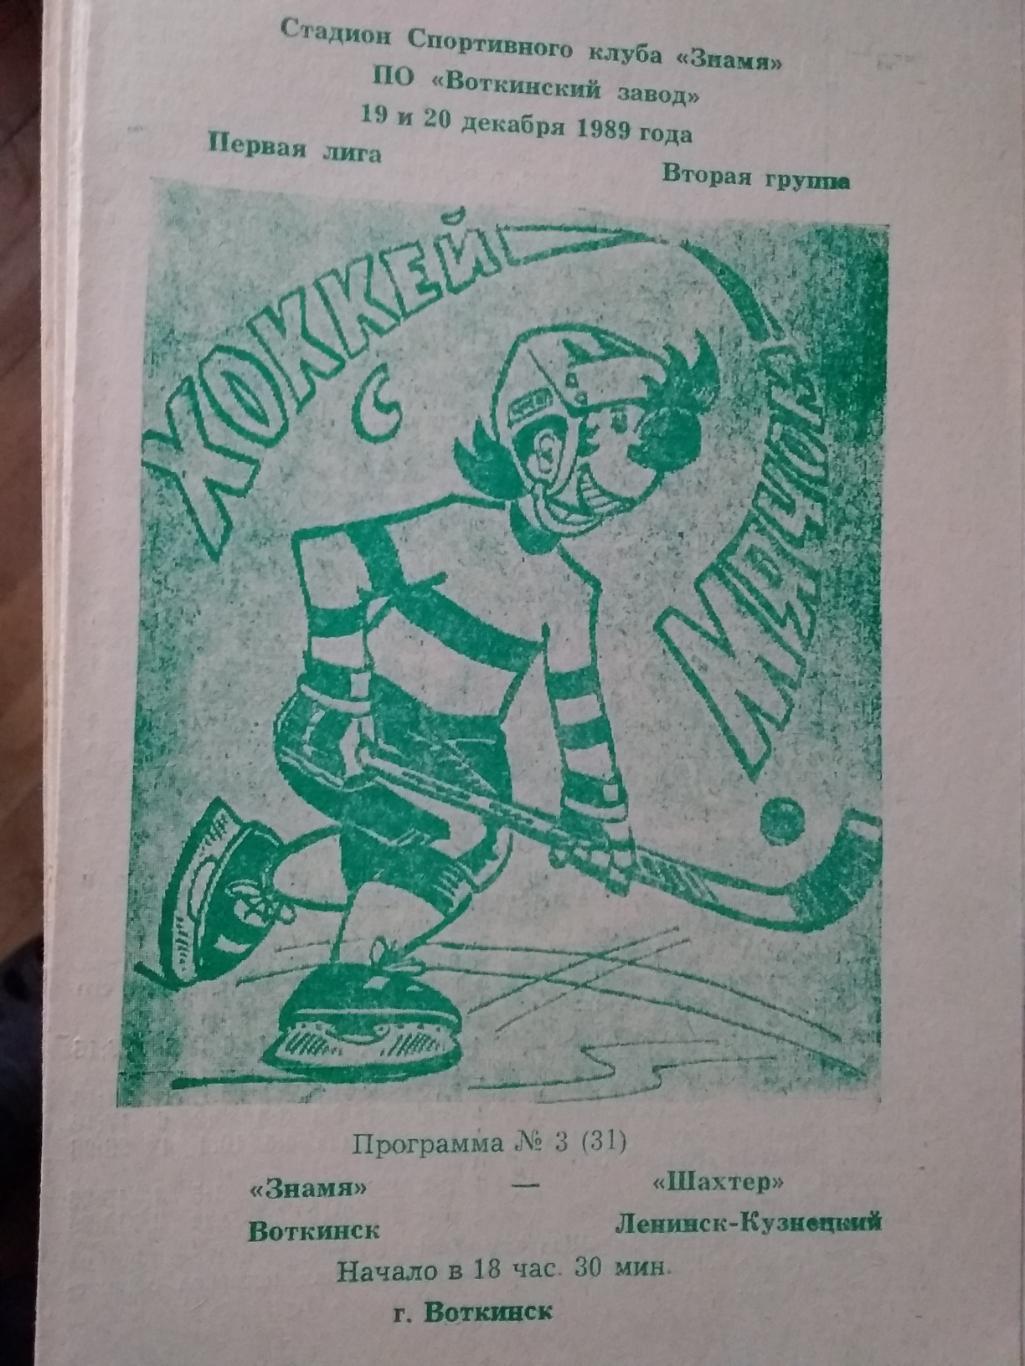 Знамя (Воткинск) - Шахтер (Ленинск-Кузнецкий). 19-20 декабря 1989.